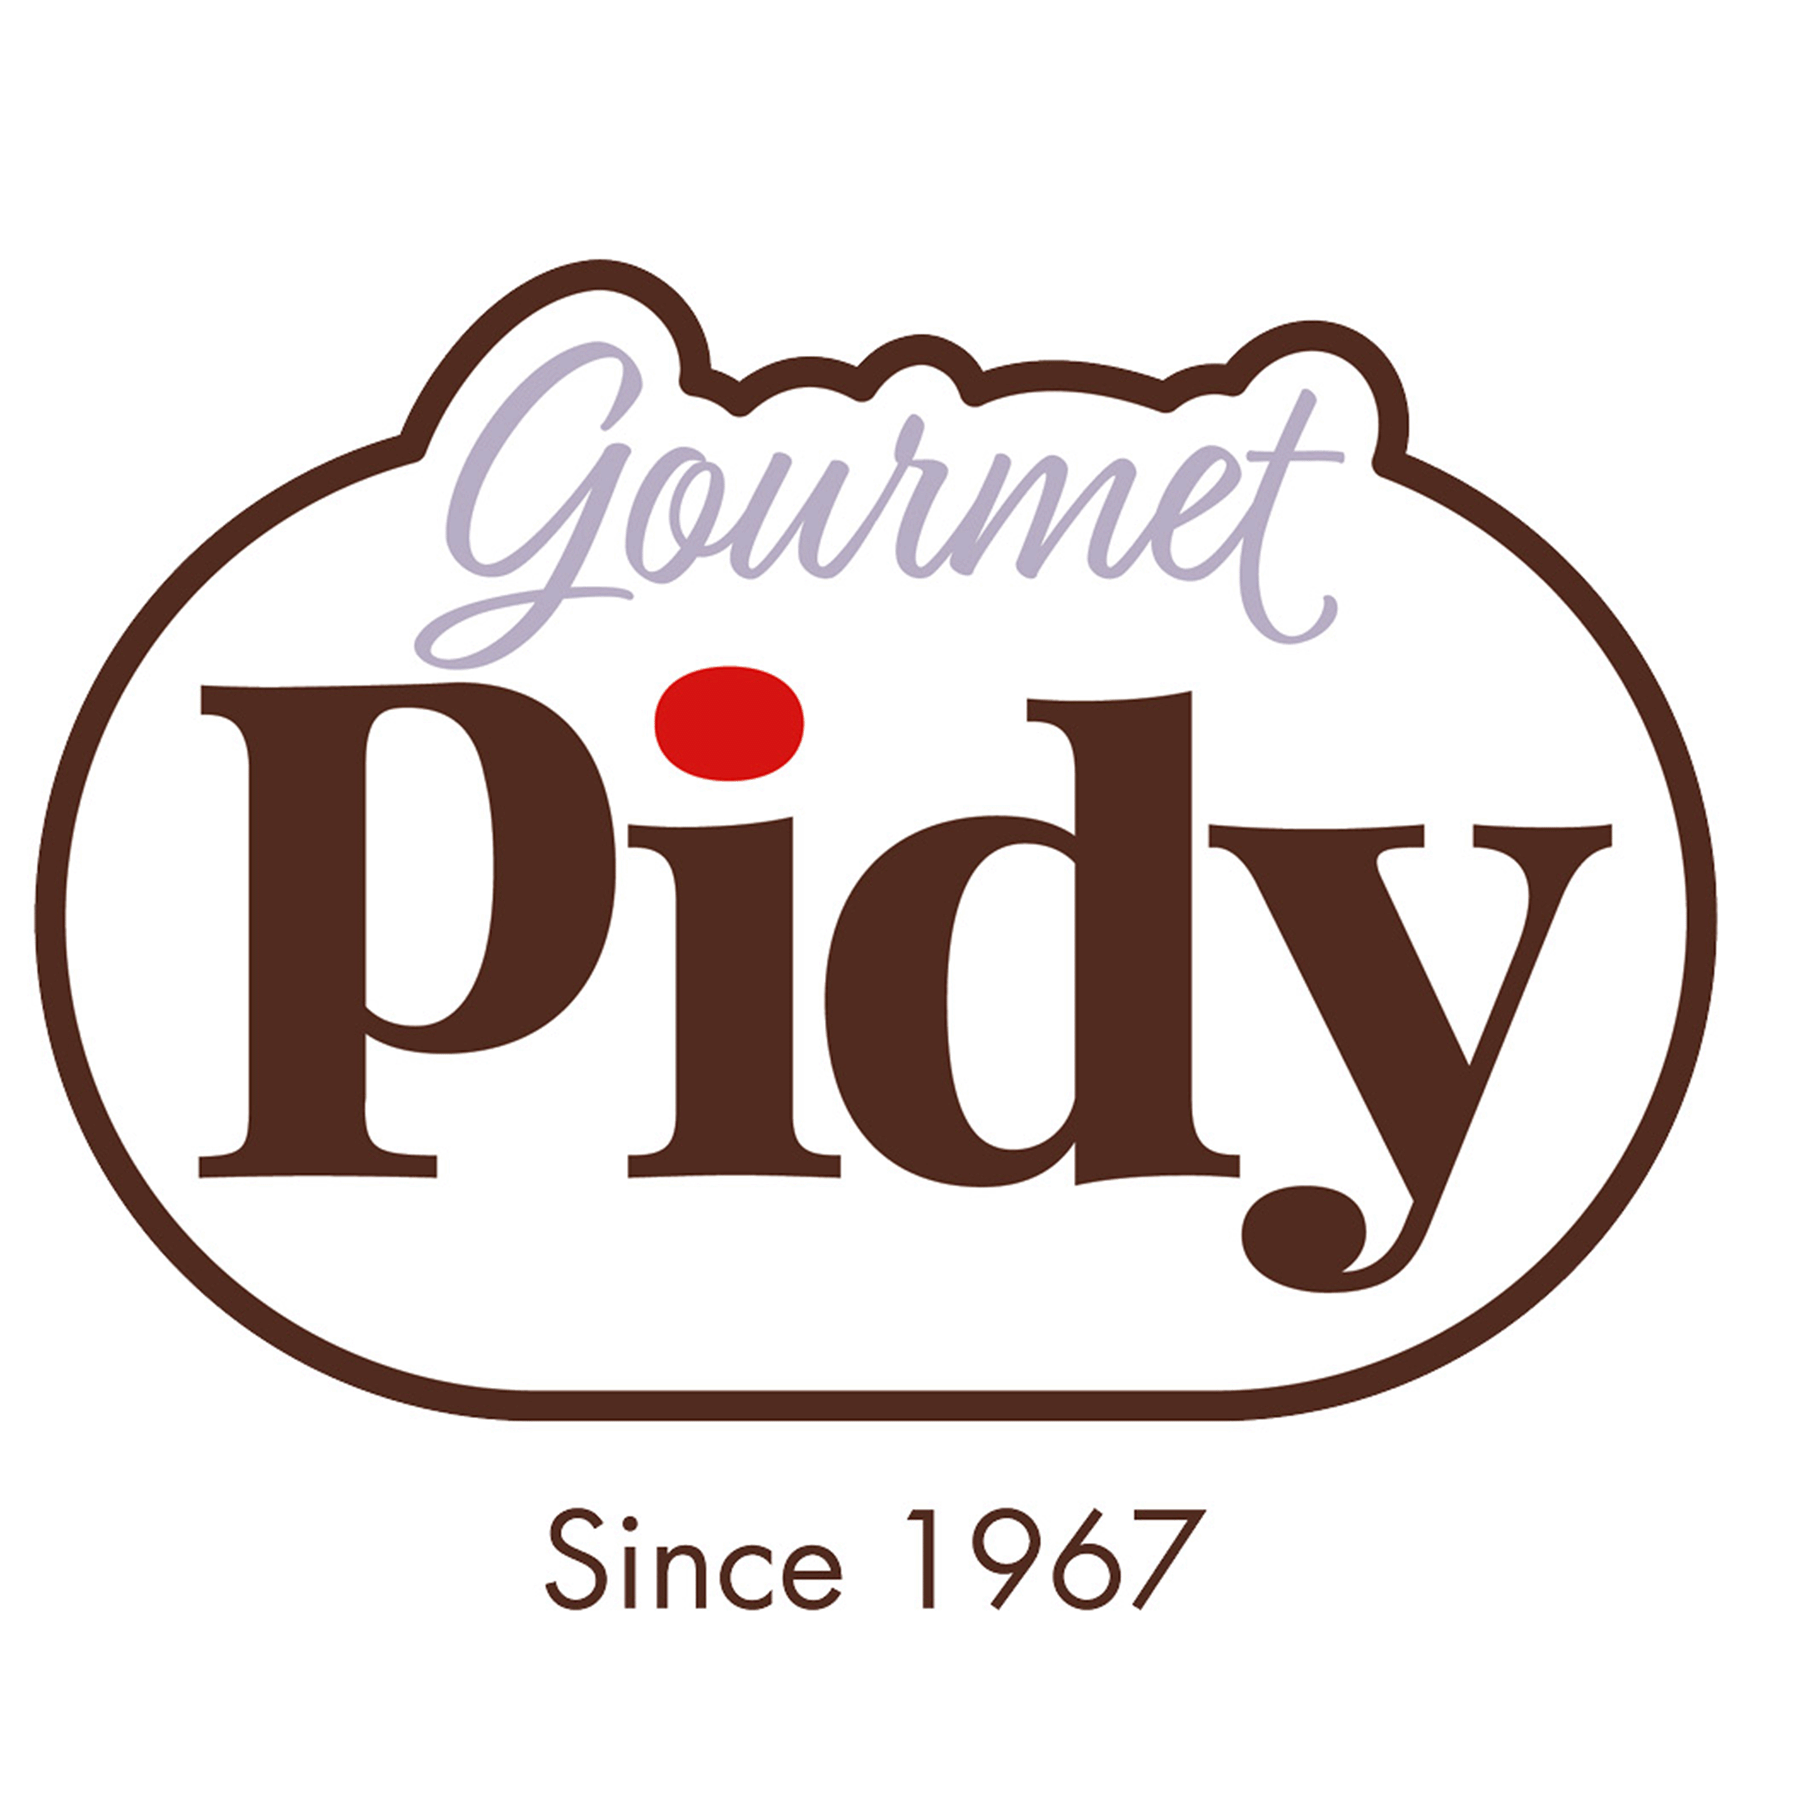 Gourmet Pidy merk